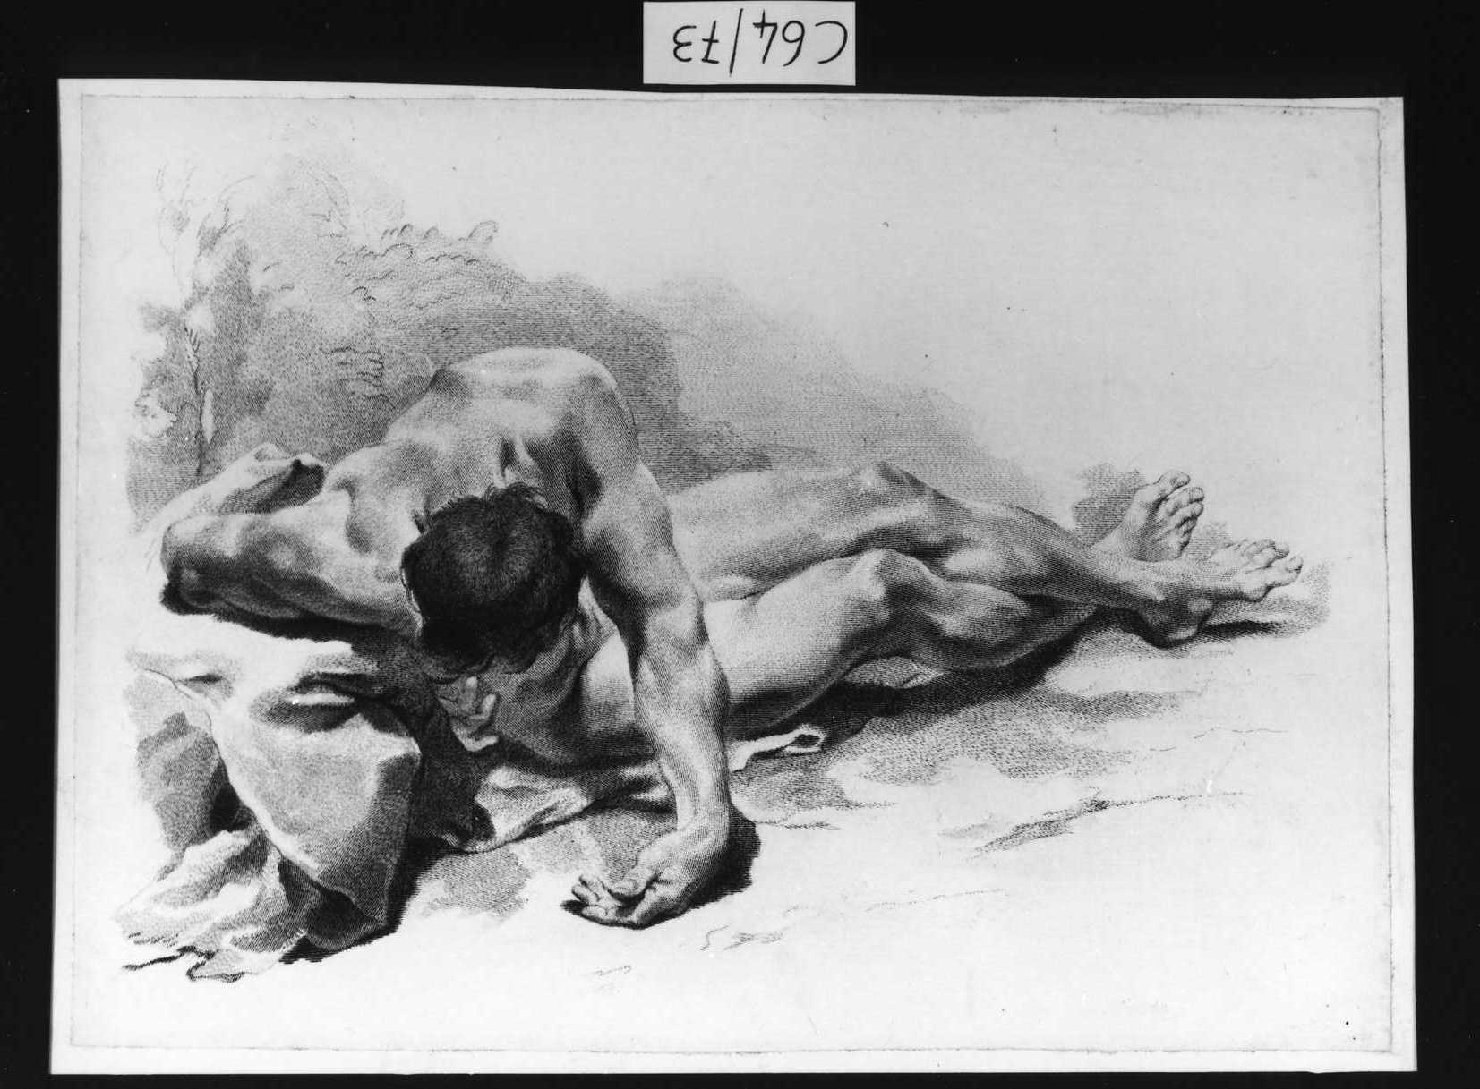 giovane nudo (stampa smarginata, serie) di Piazzetta Giovanni Battista, Pitteri Marco Alvise (sec. XVIII)